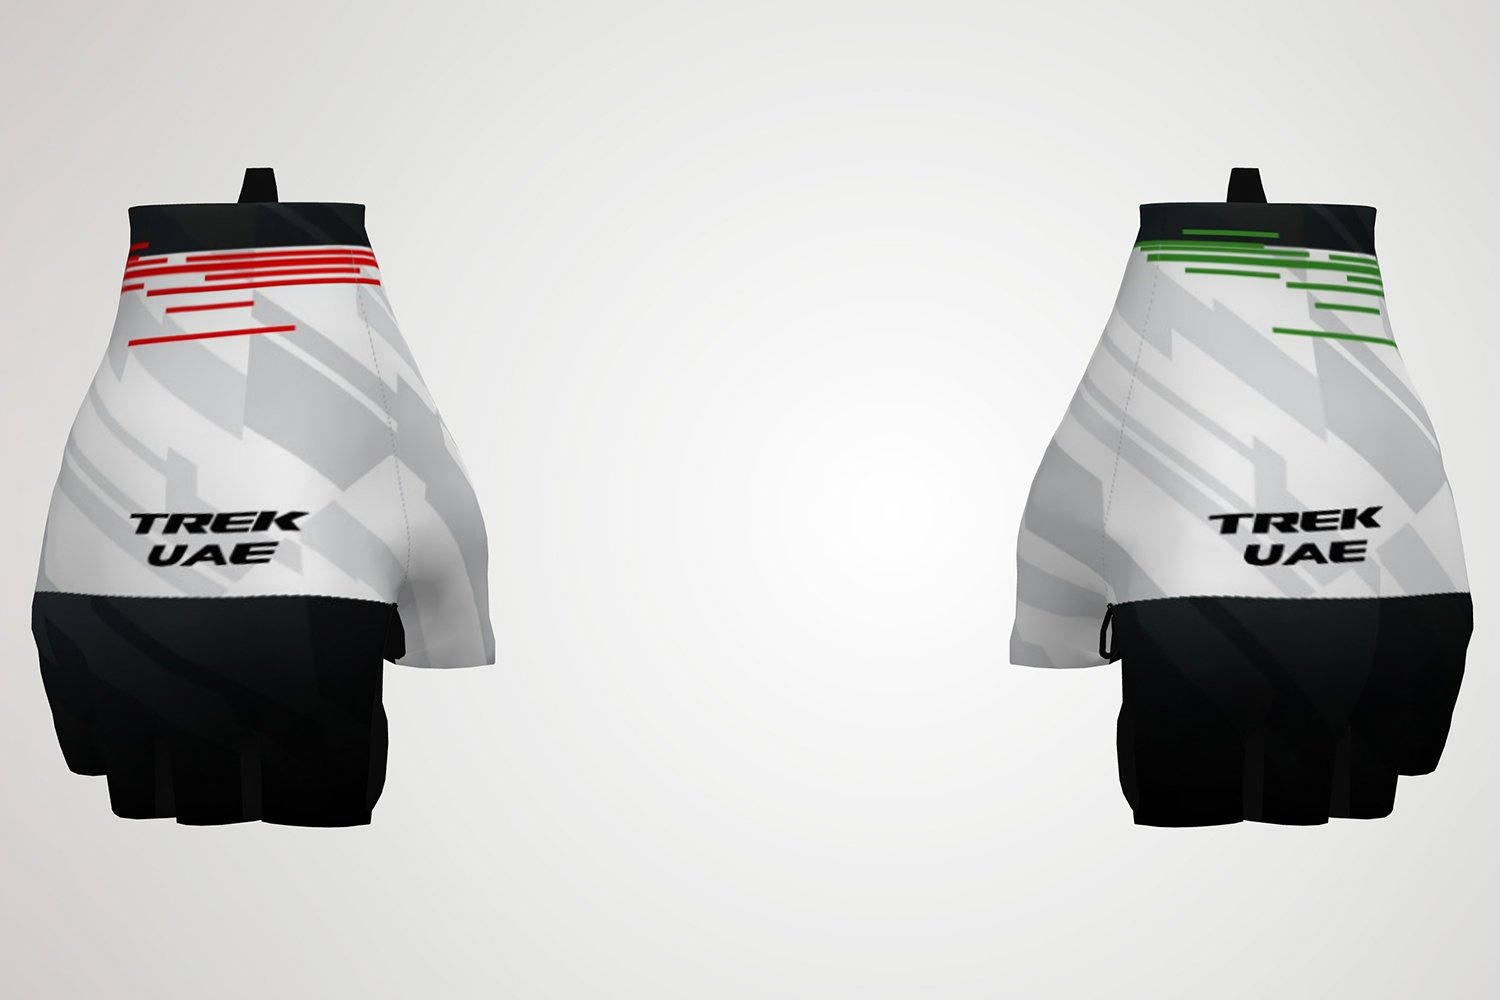 TREK UAE - Gloves